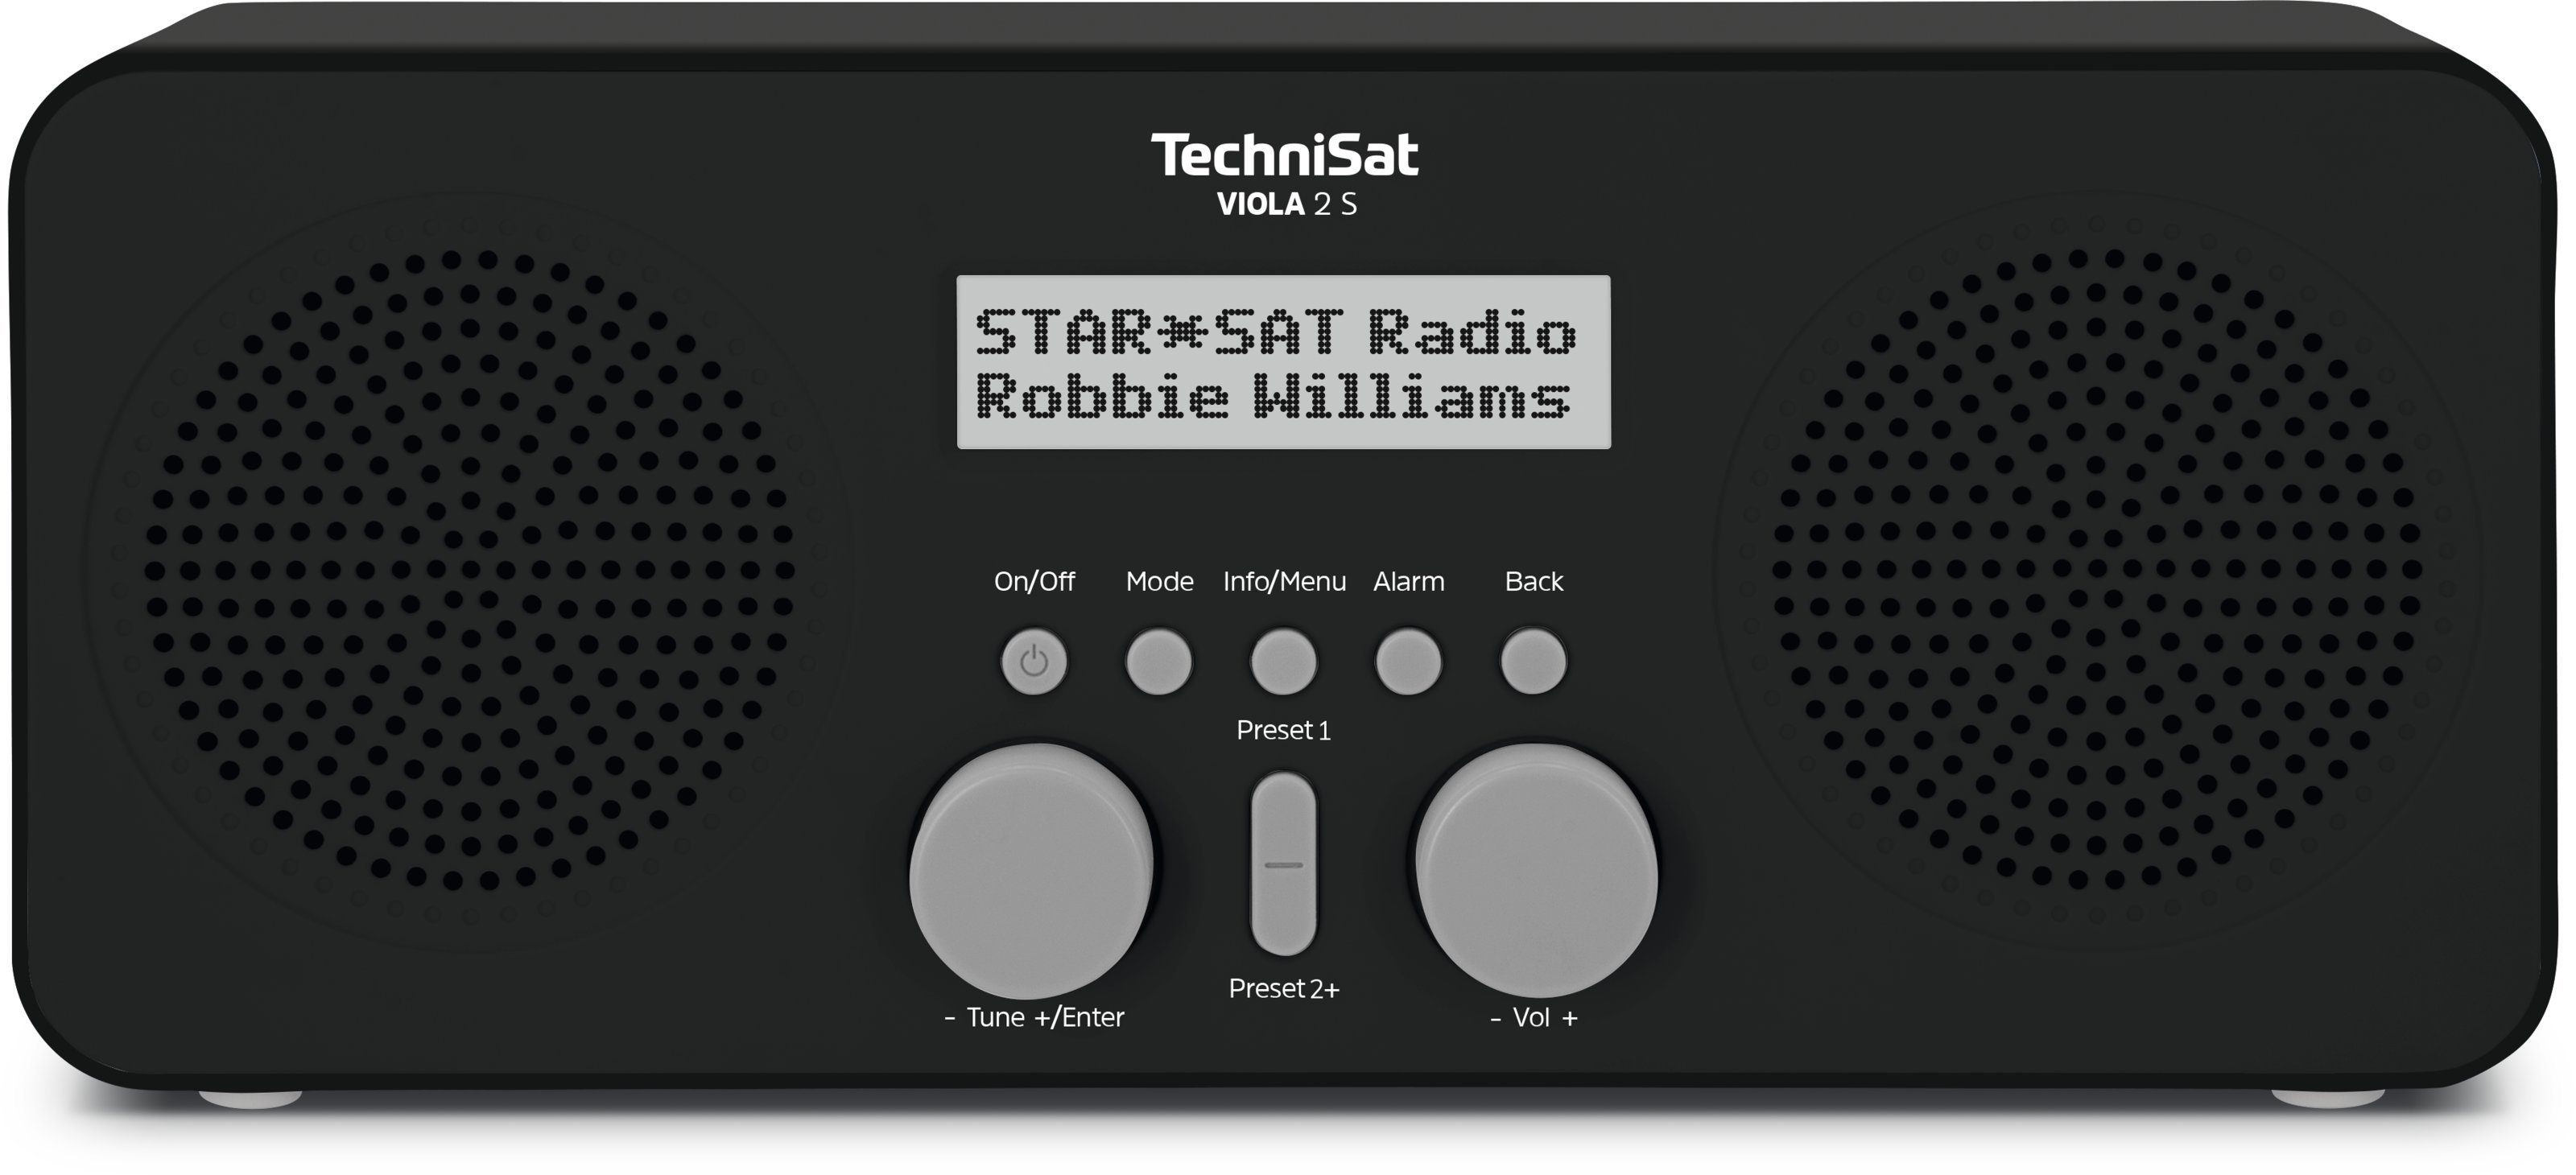 TechniSat VIOLA 2 S Digitalradio (DAB) (Digitalradio (DAB), UKW, 4 W, Weck- und Sleep-Funktion, Netz- und Batteriebetrieb) schwarz